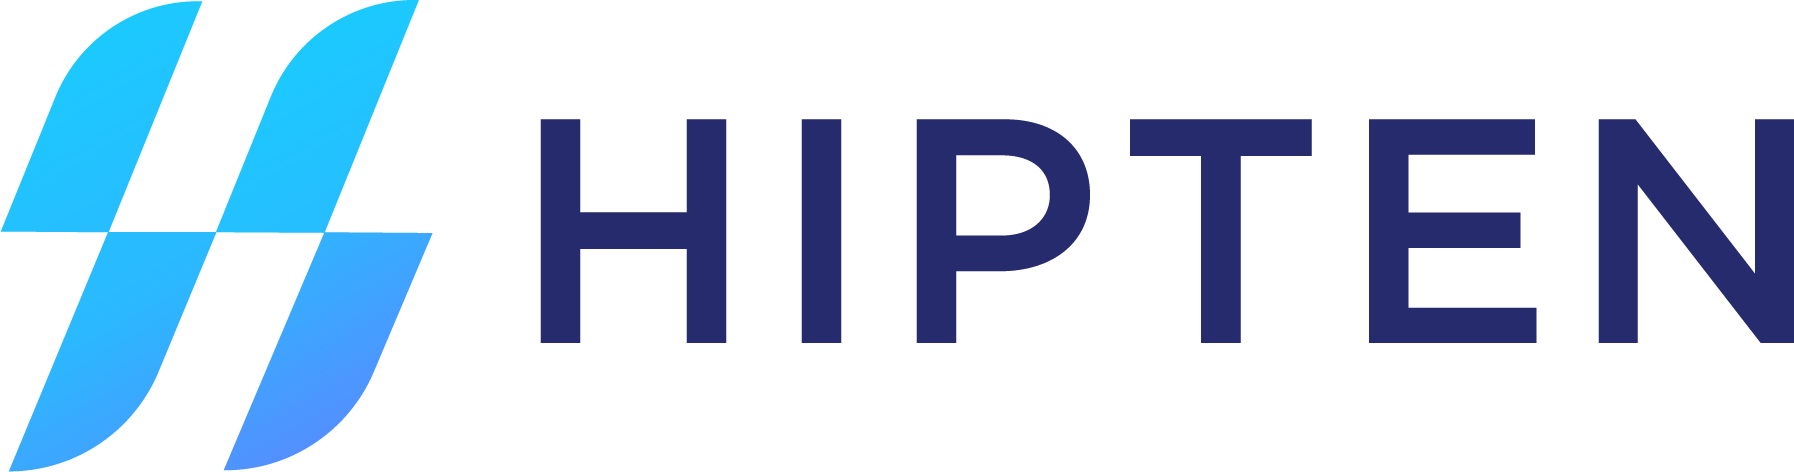 HipTen_Logo